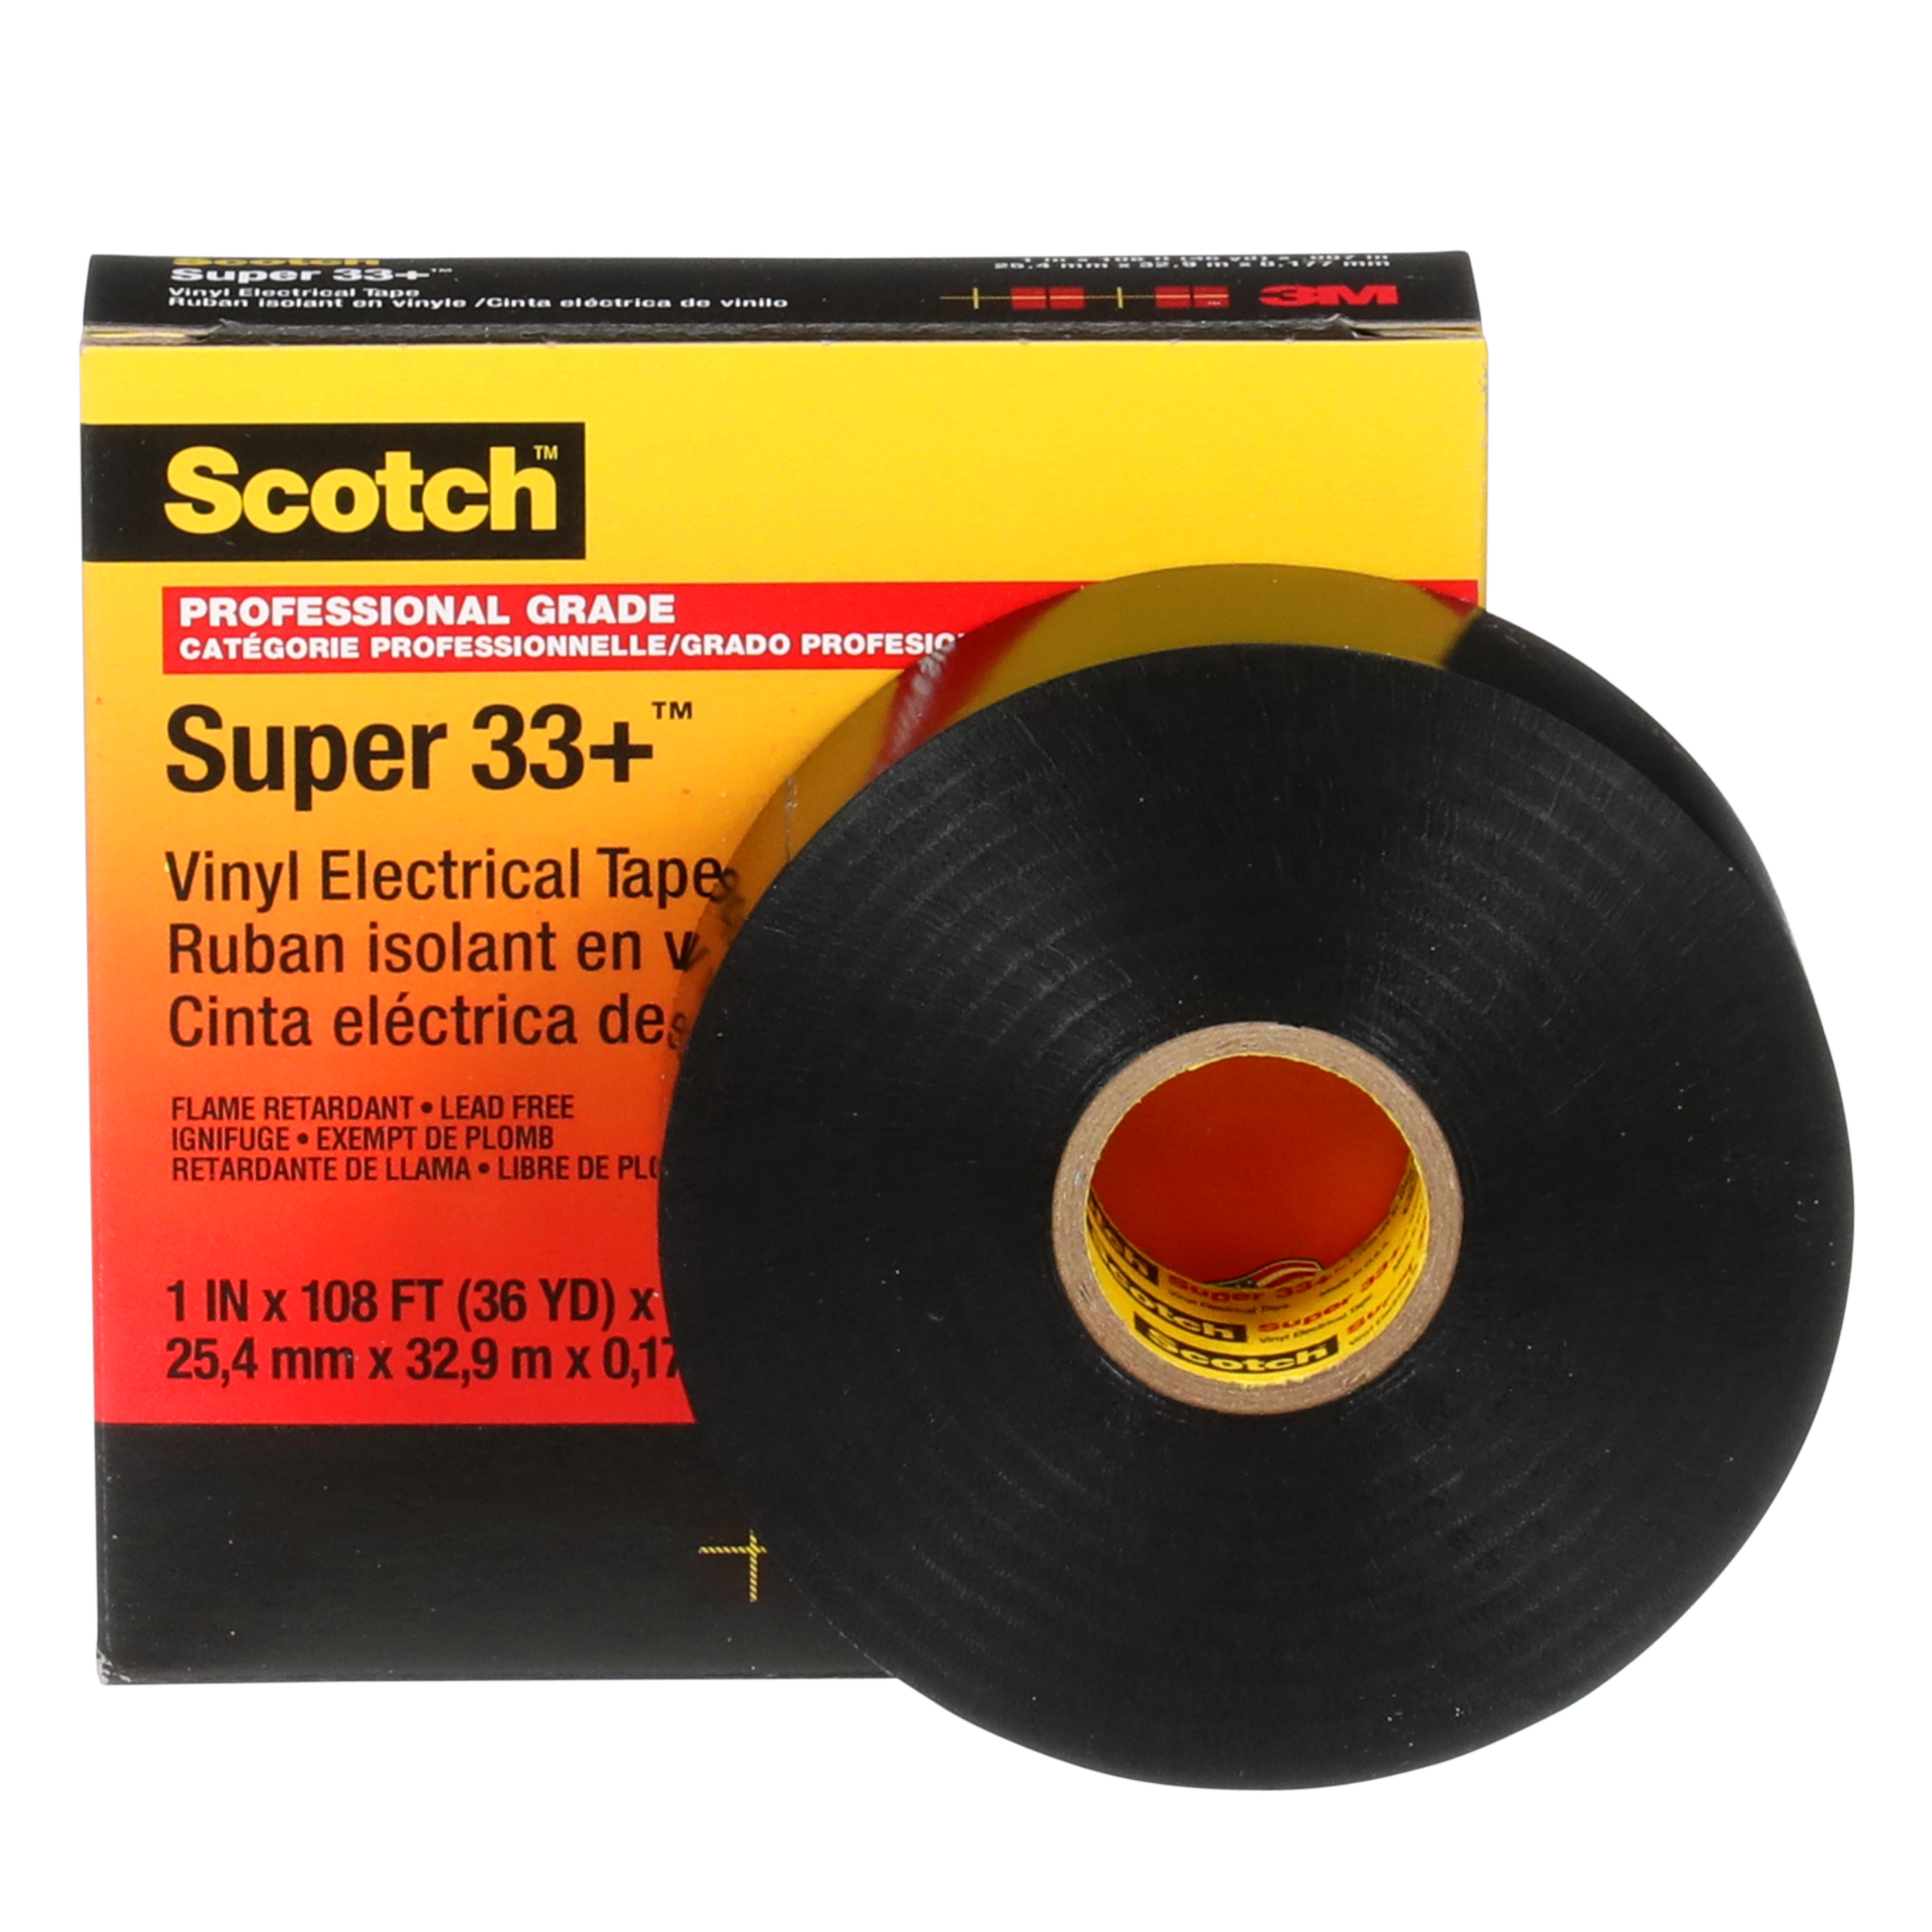 Ruban isolant en vinyle 3M Scotch Super 33+ de qualité professionnelle,  noir, 19 mm x 20 m (3/4 po x 66 pi)